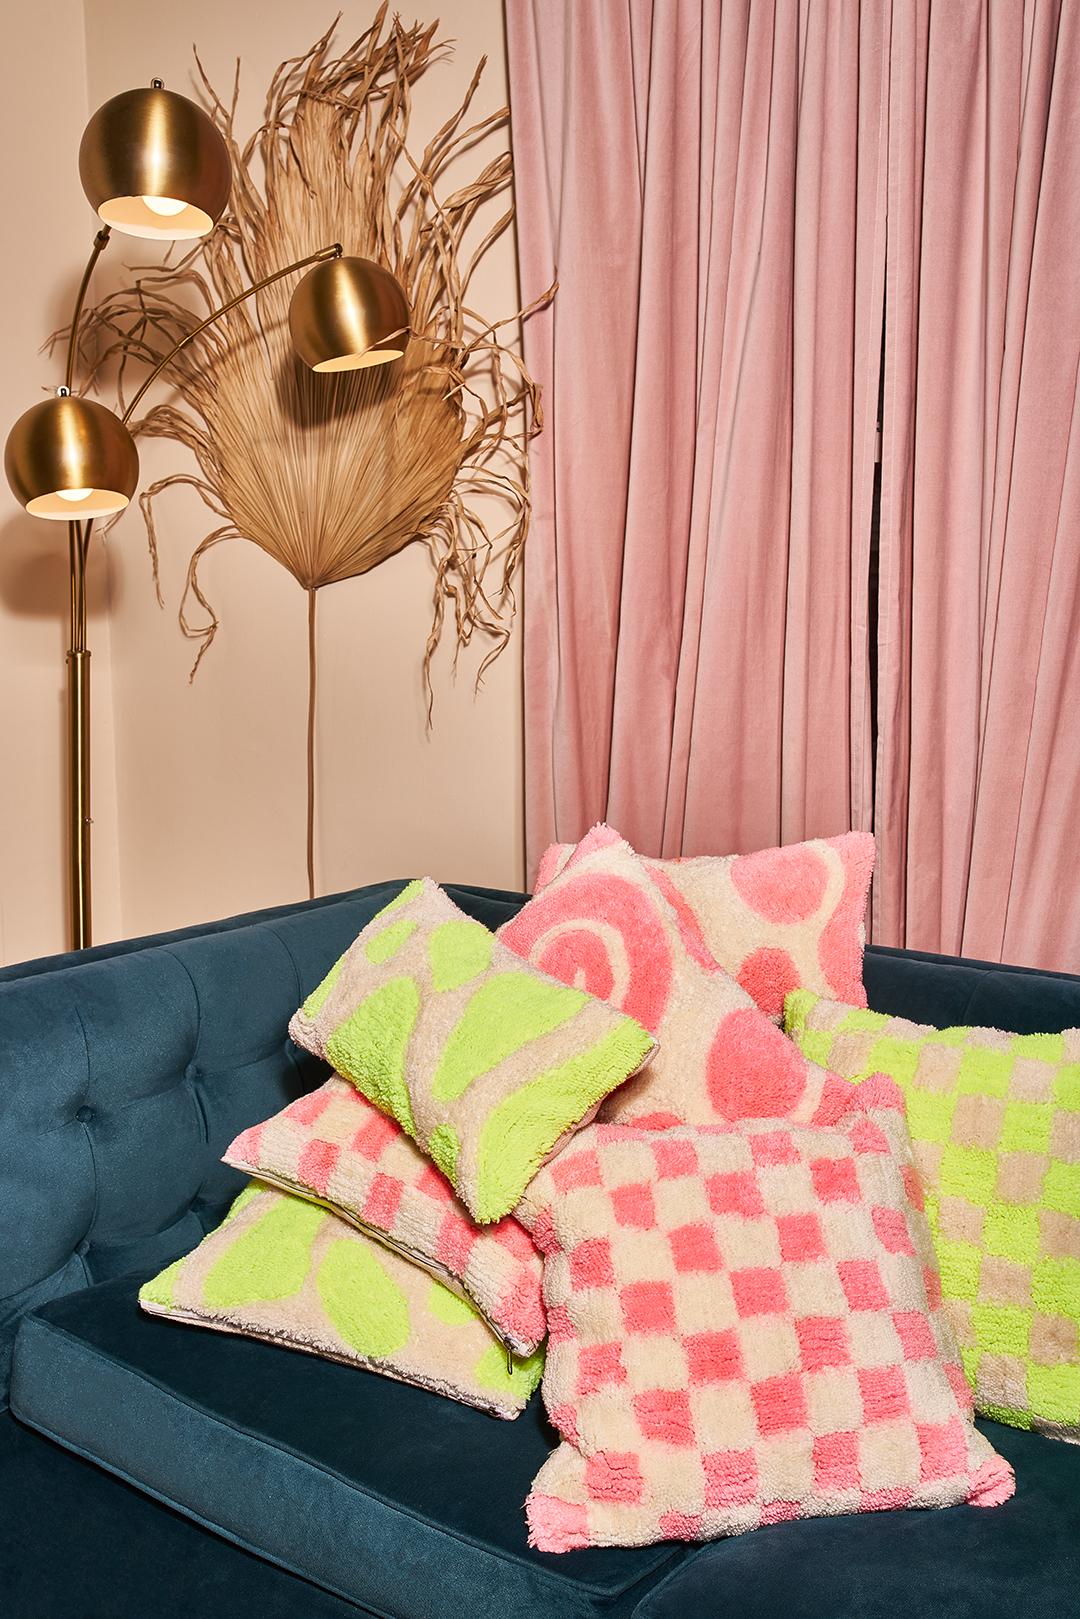 Wunderschön gestaltetes Kissen mit Neon-Karo, der perfekte Farbakzent für Ihr Wohn- oder Schlafzimmer.

Acrylgarn, Reißverschluss

Maße: 18 in x 18 in

Von mir entworfen und in Indien handgefertigt.